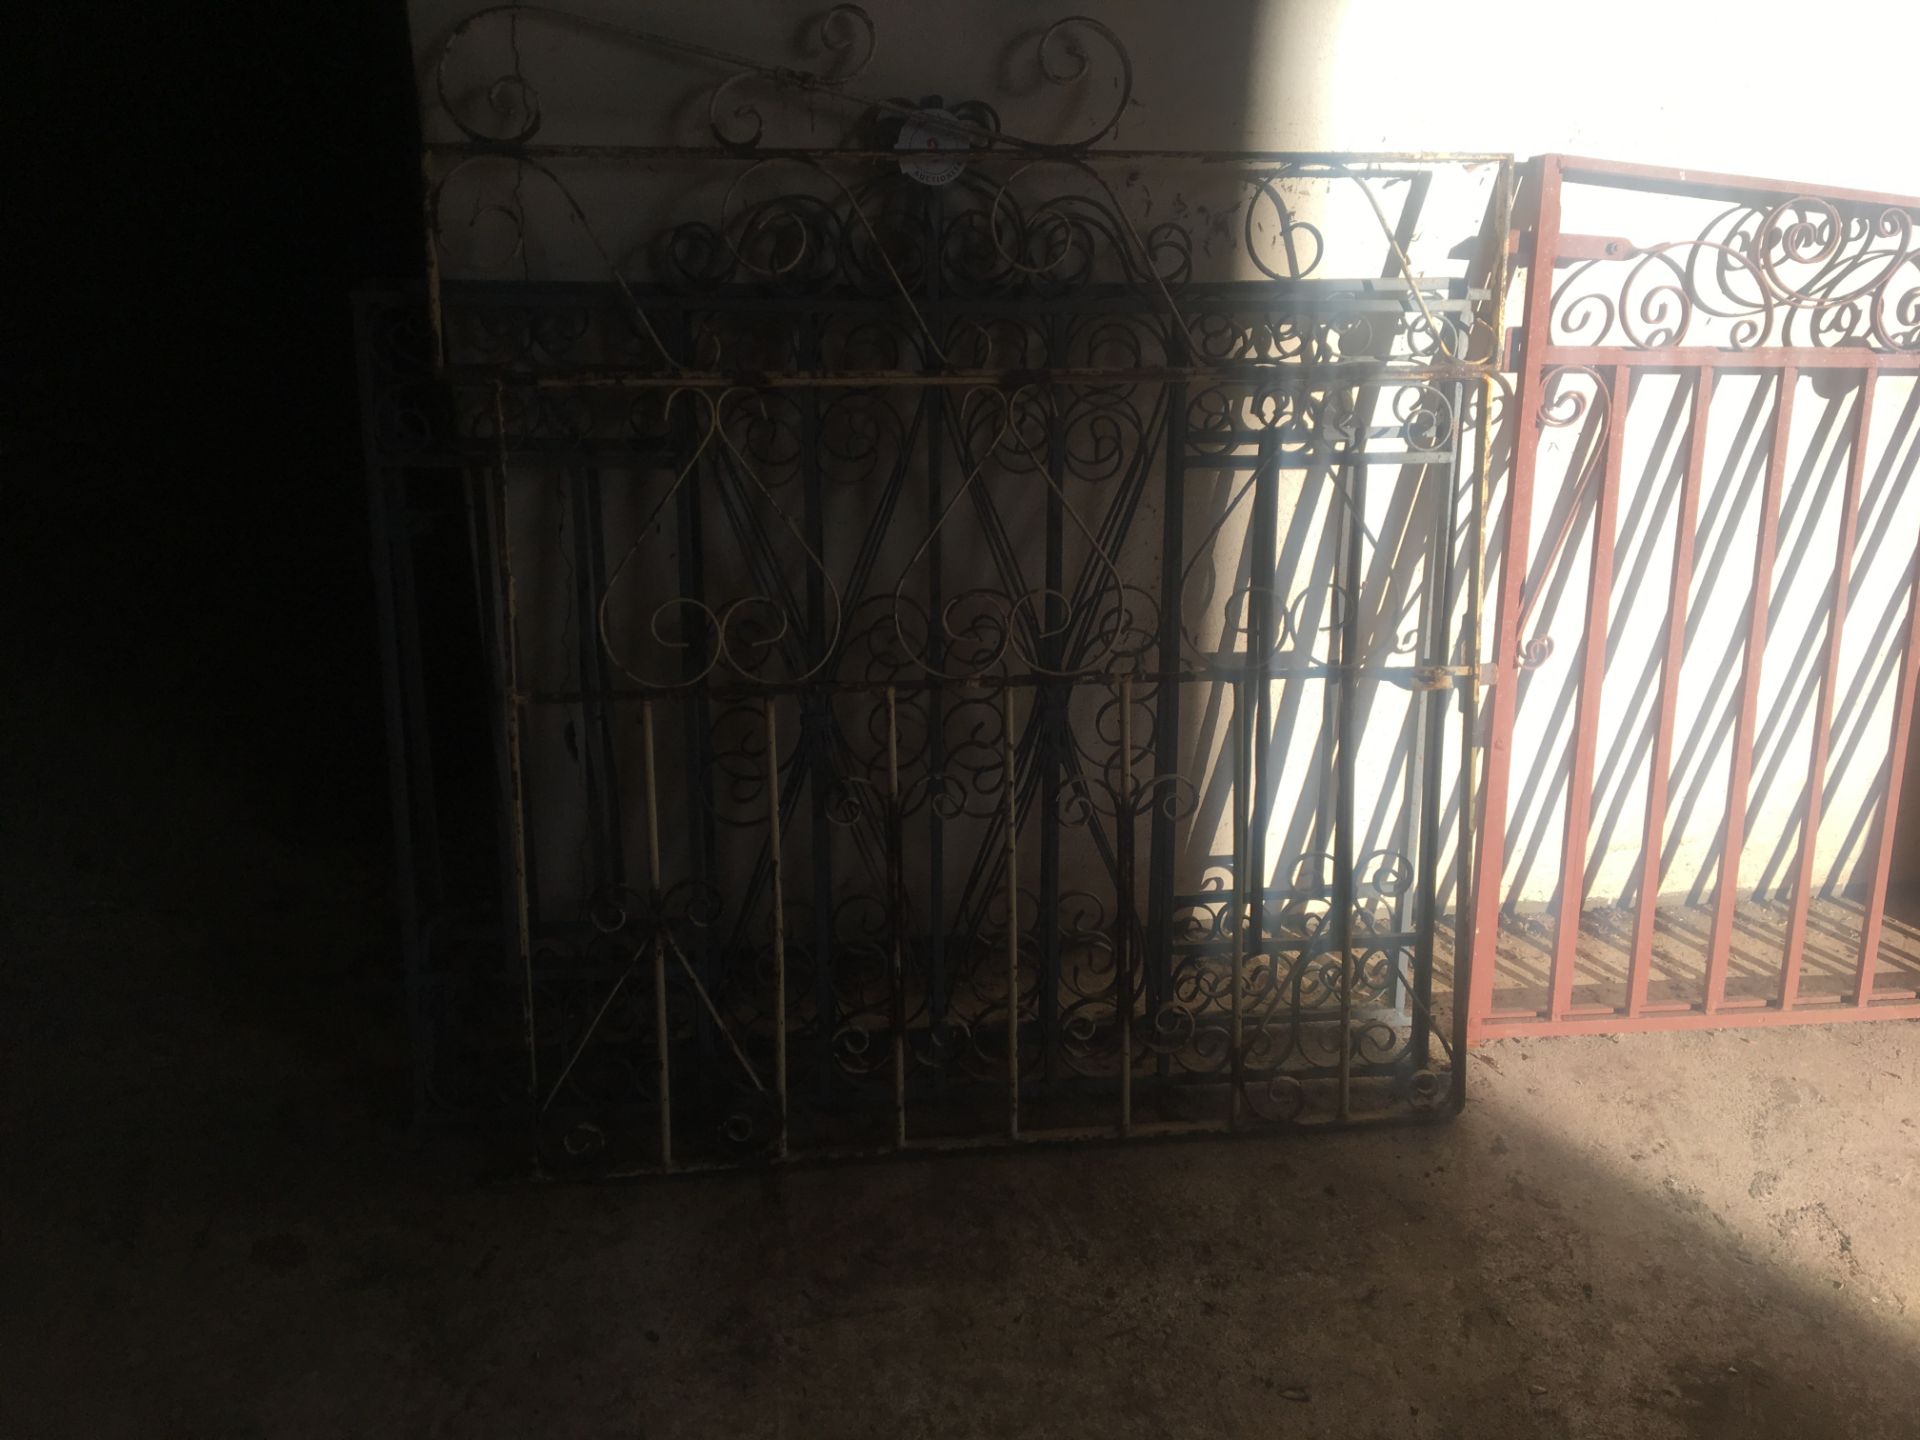 Pair of metal Gates